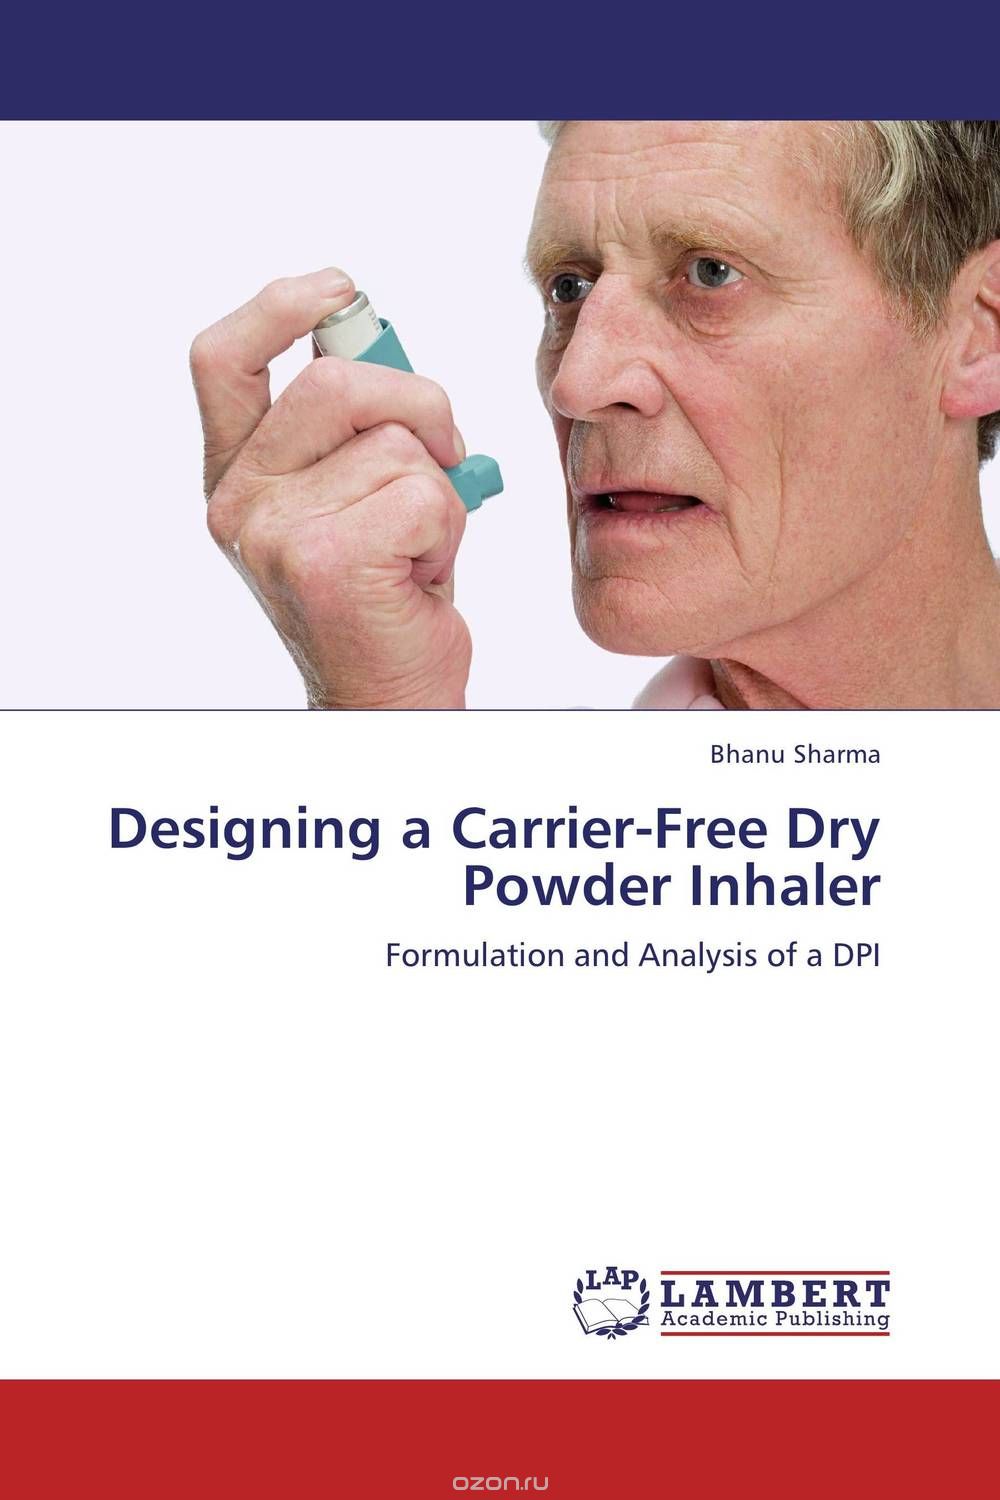 Скачать книгу "Designing a Carrier-Free Dry Powder Inhaler"